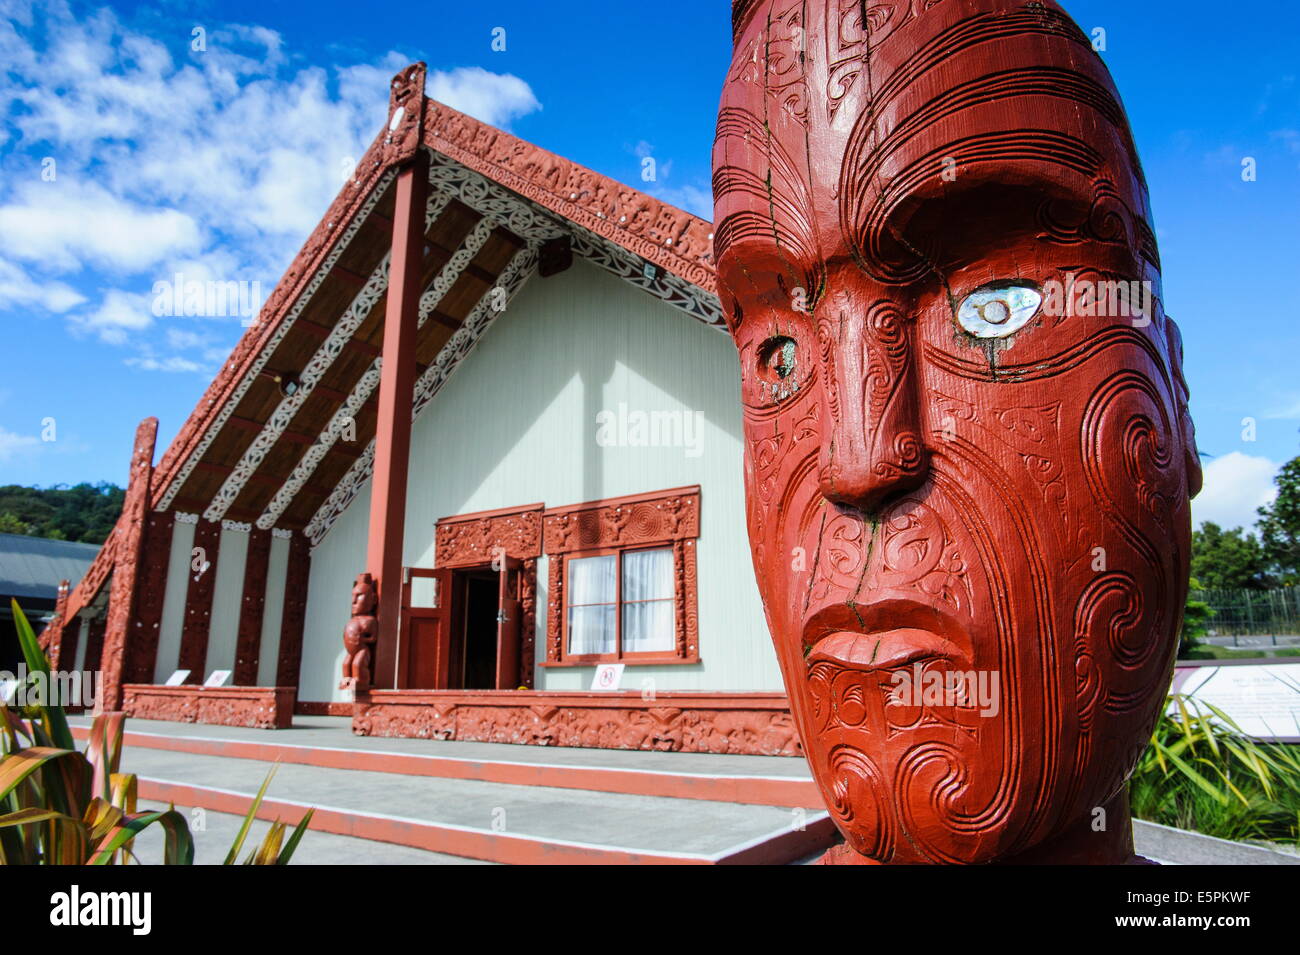 Masque sculpté en bois traditionnel dans le centre culturel maori Te Puia, Rotorura, île du Nord, Nouvelle-Zélande, Pacifique Banque D'Images